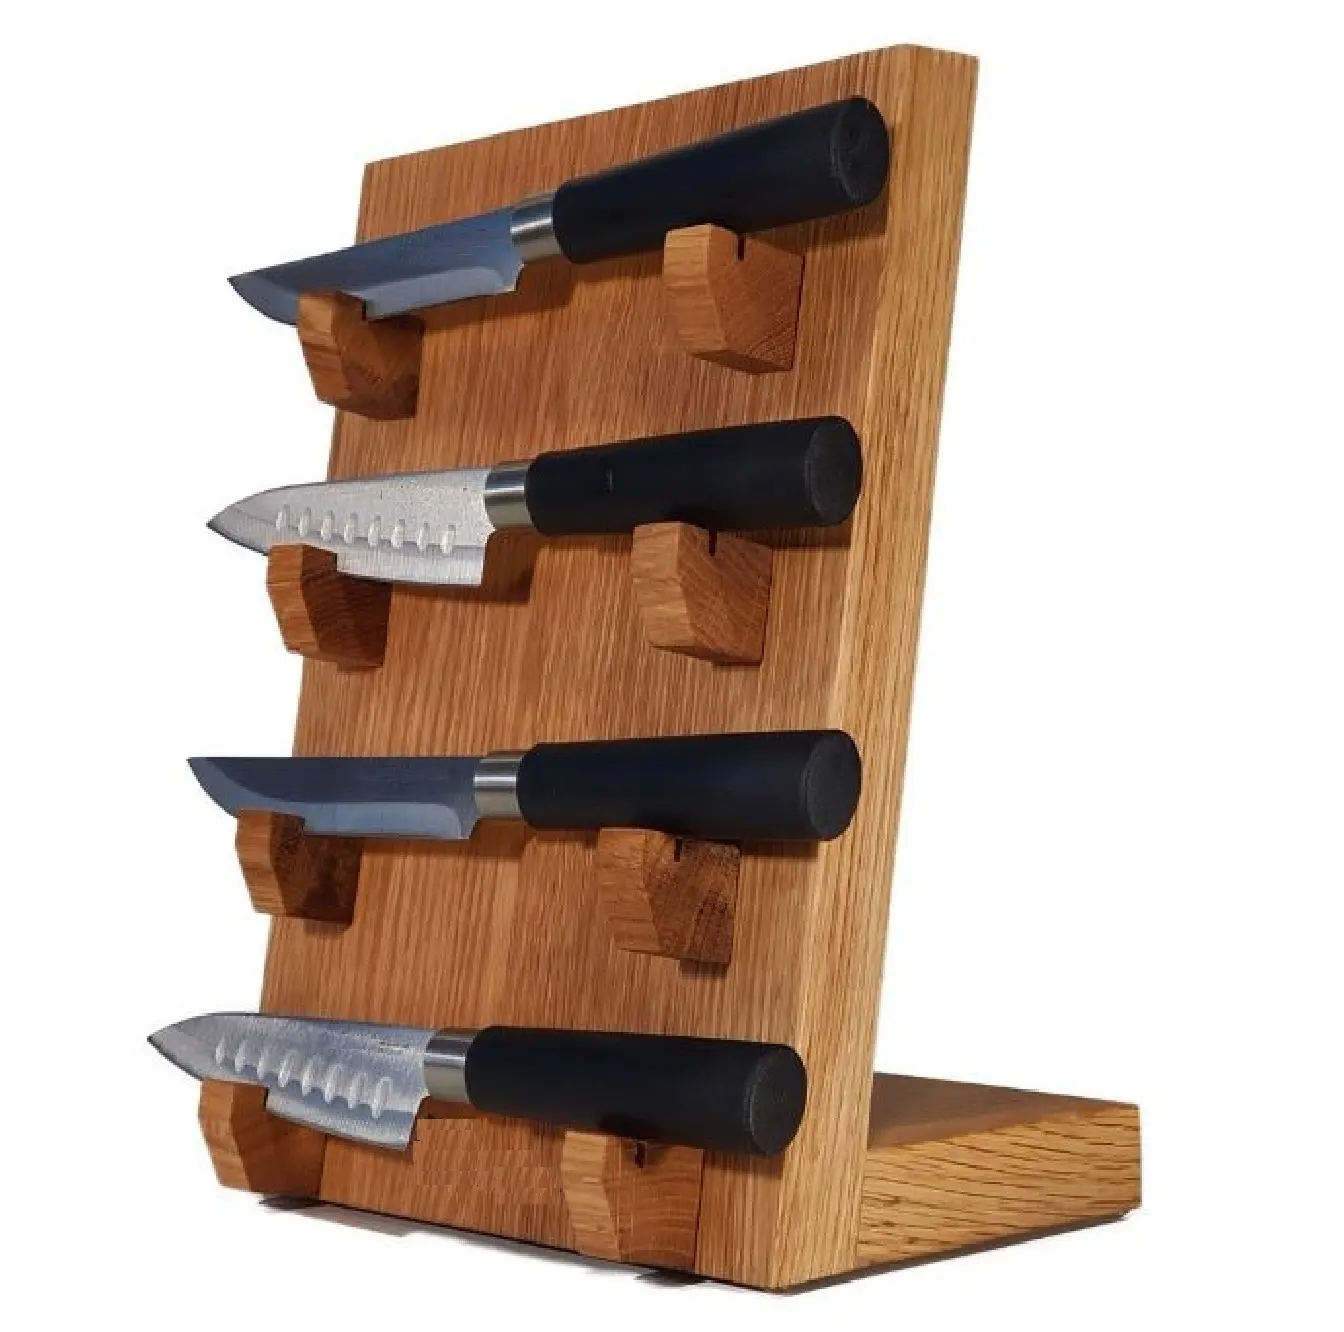 Soporte de exhibición de cuchillos de madera Juego de cuchillos con mango de color negro Utensilios de corte de utensilios de cocina con soporte de exhibición de bloque de colocación